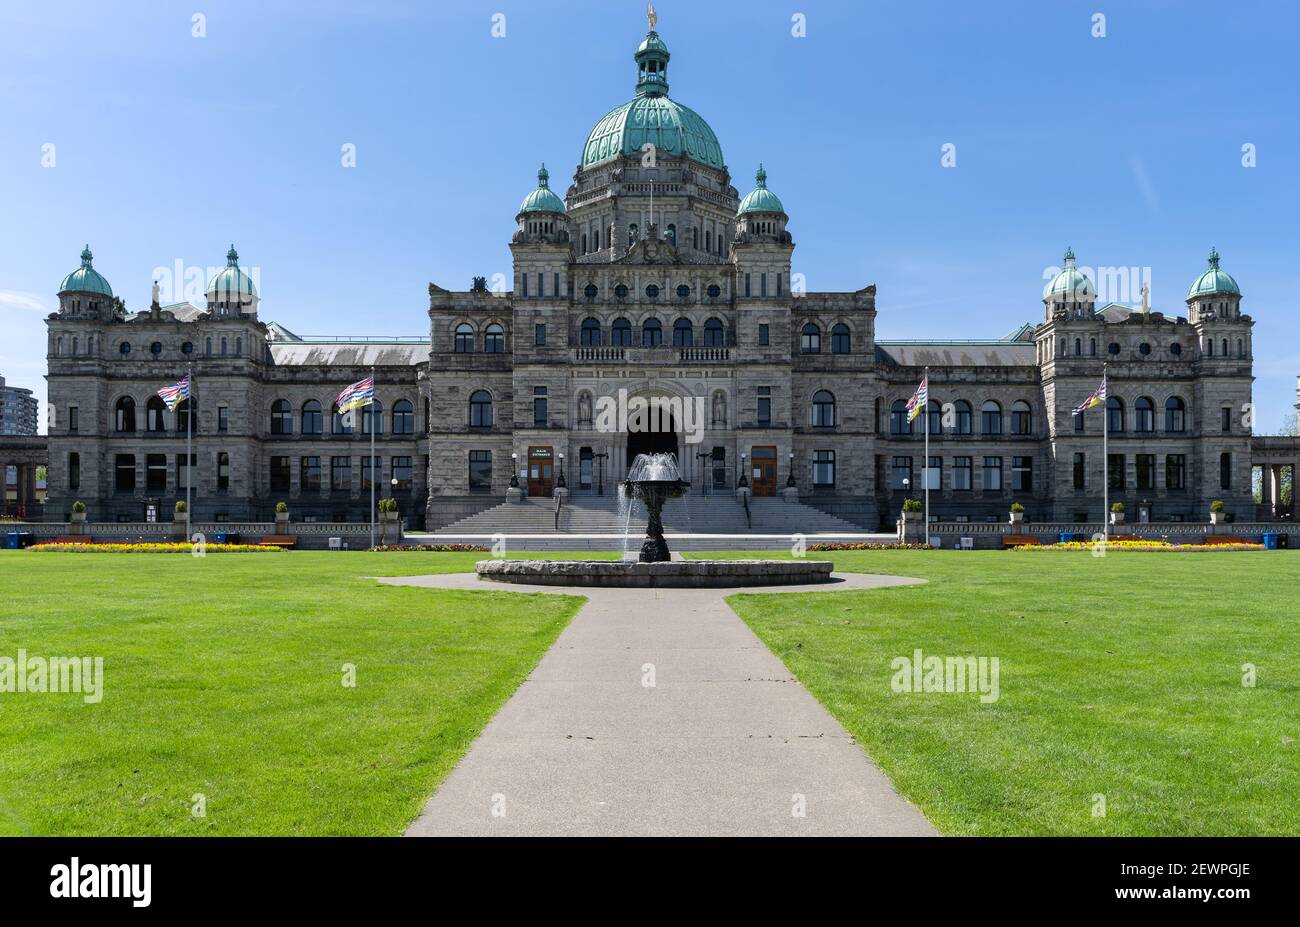 Edifici del Parlamento della British Columbia, sparati a Victoria, Vancouver Island, British Columbia, Canada Foto Stock